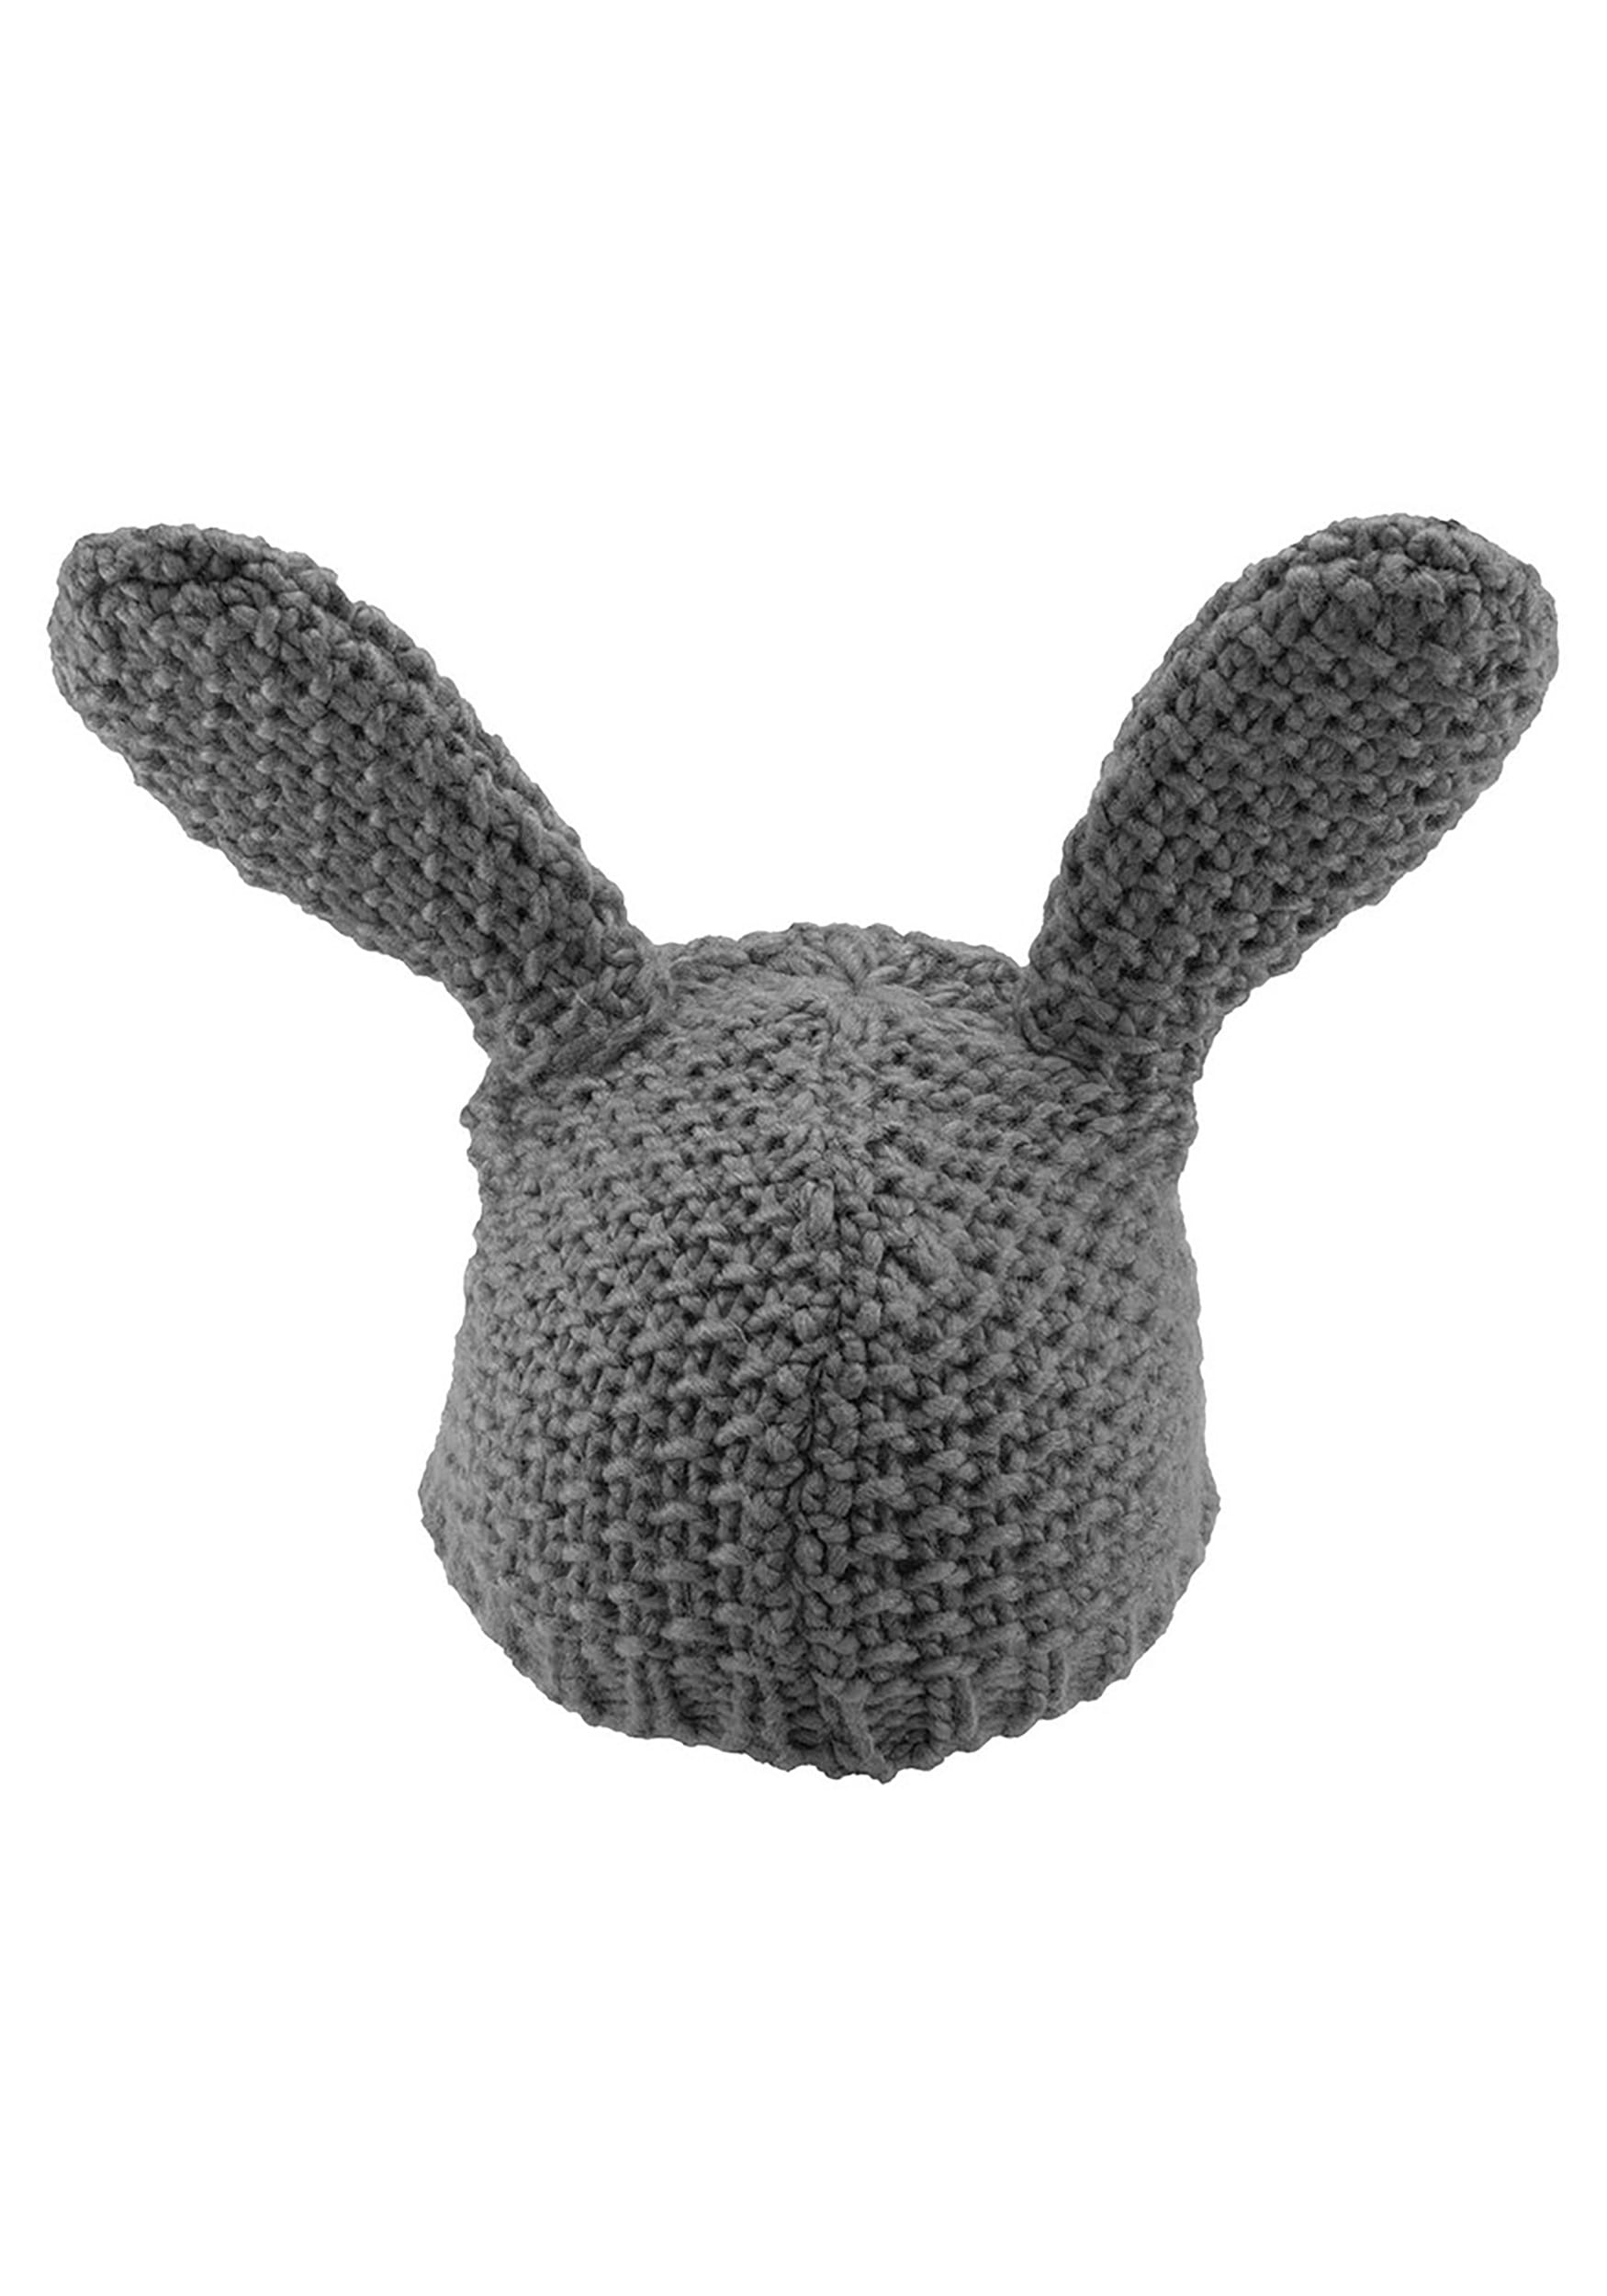 Zootopia Judy Hopps Knit Beanie